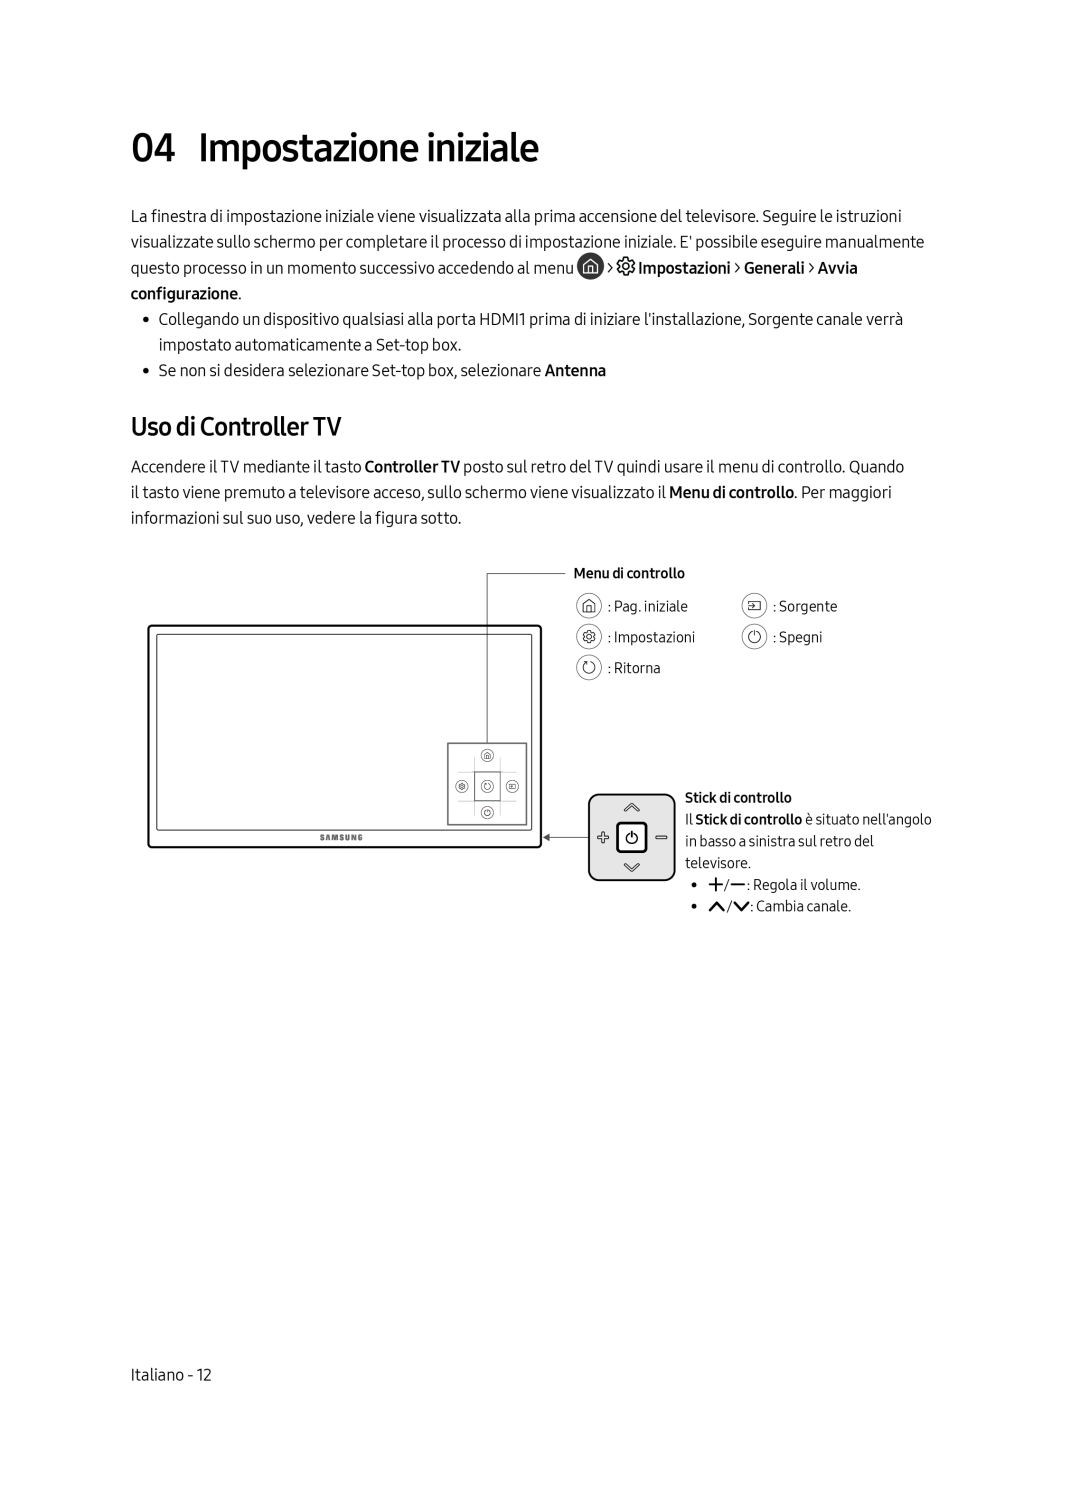 Samsung UE49MU6179UXZG, UE65MU6179UXZG, UE50MU6179UXZG, UE75MU6179UXZG manual Impostazione iniziale, Uso di Controller TV 